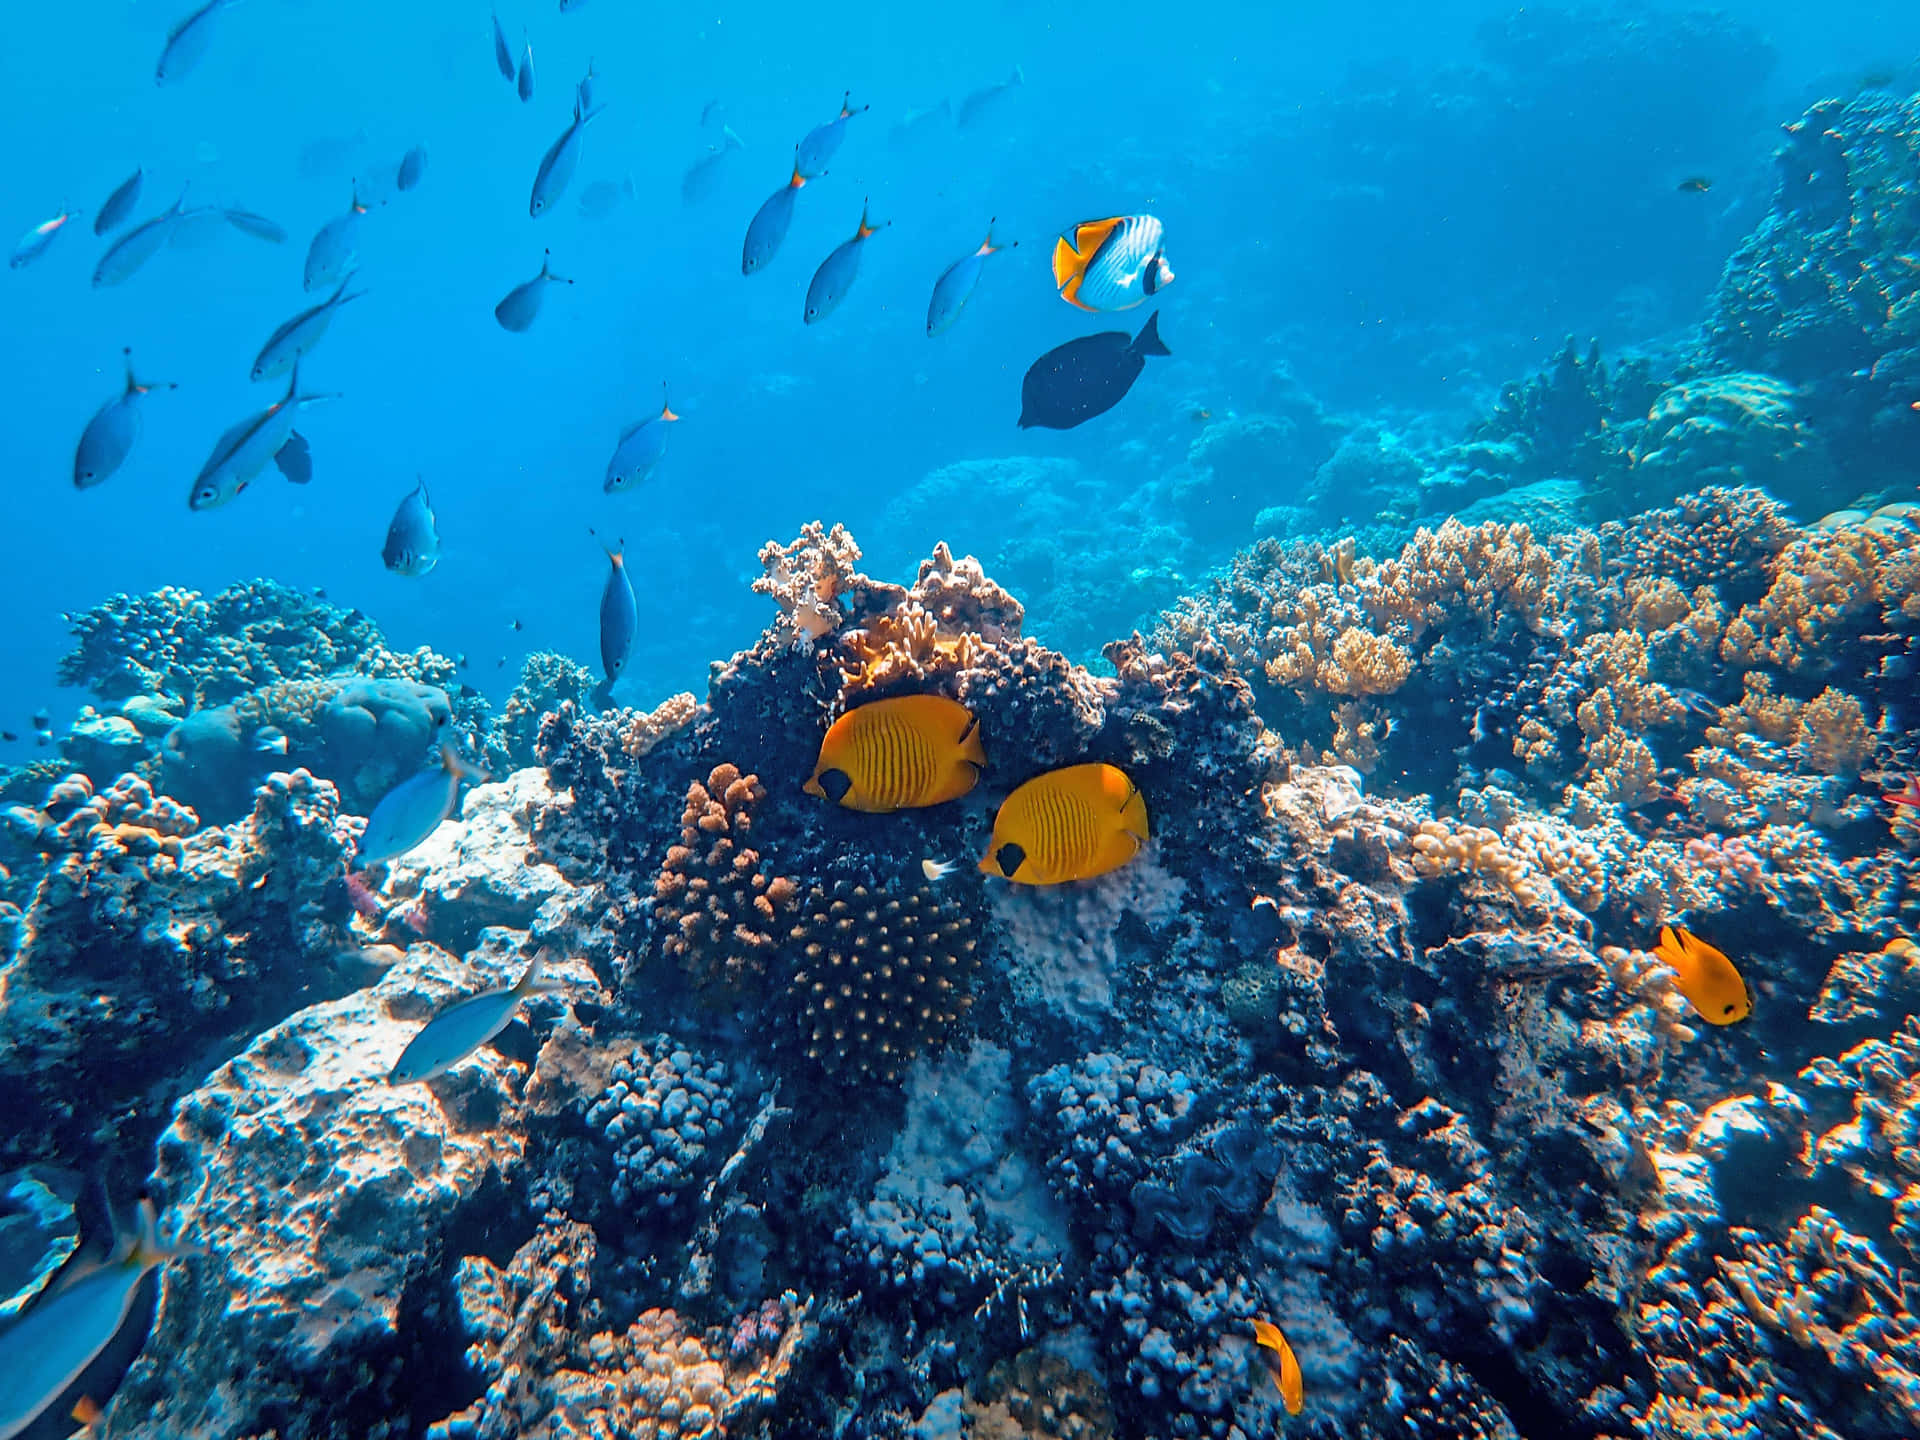 En levende og billedskøn koralrev i havet.